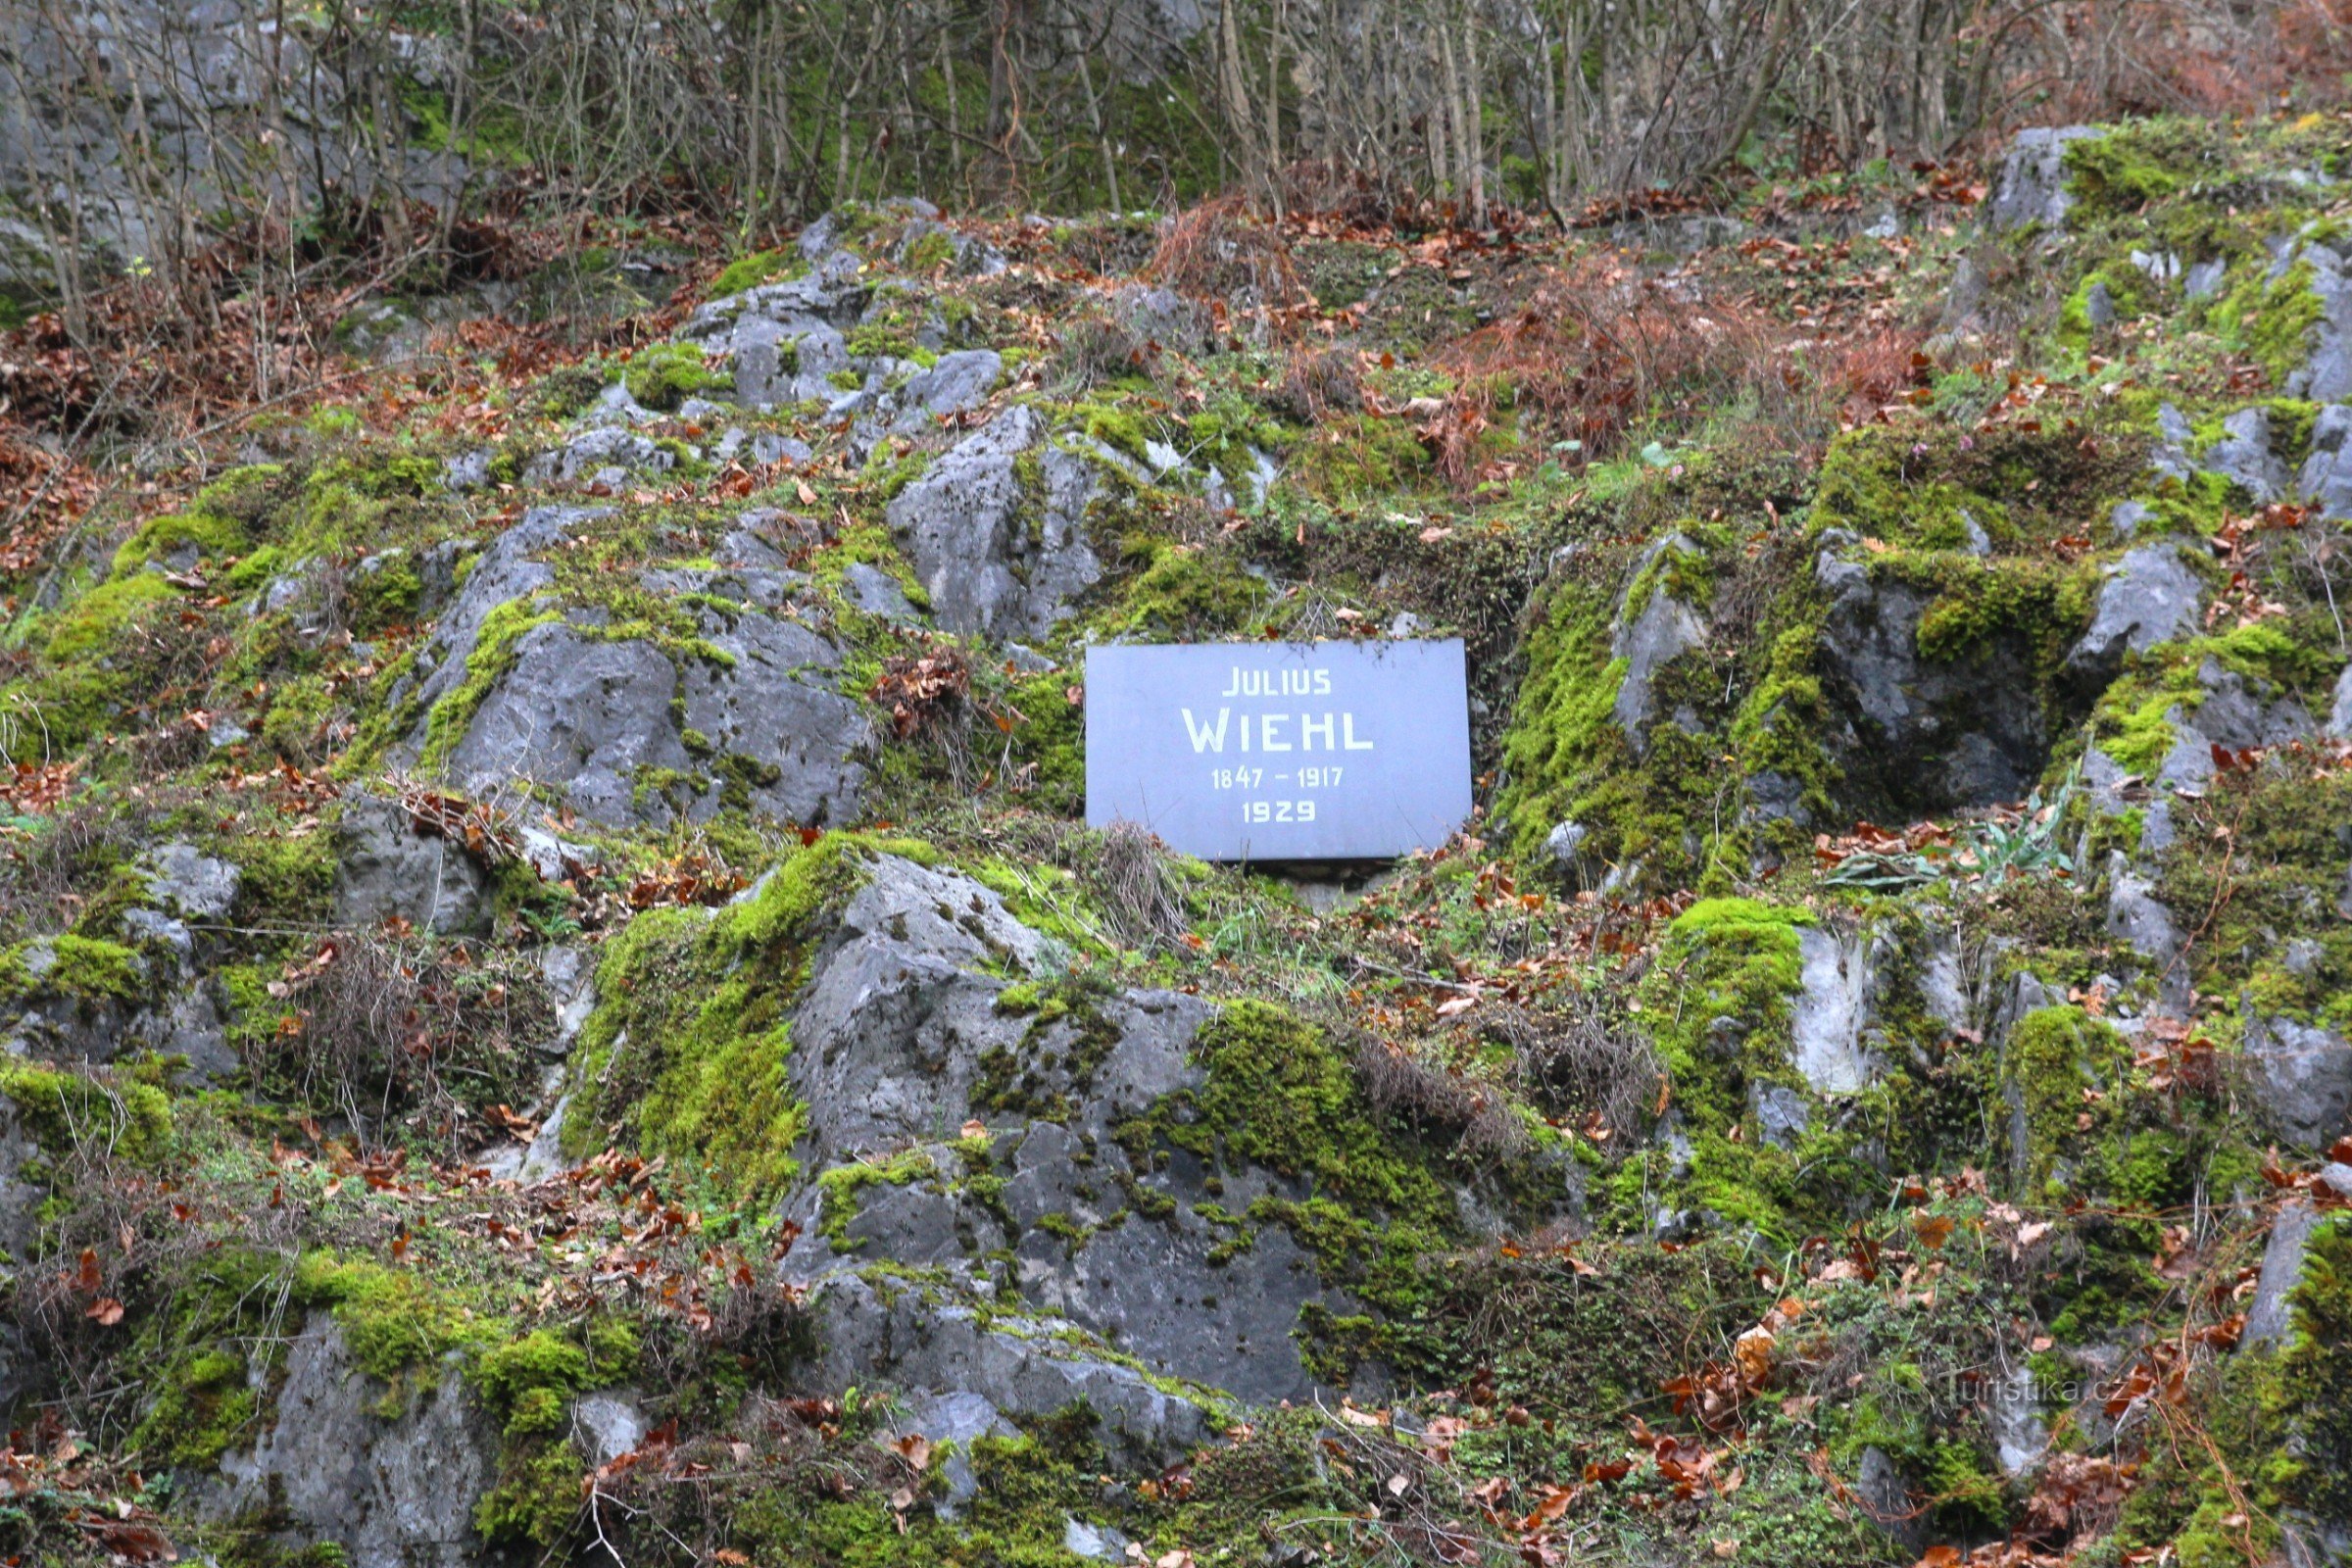 Spomen ploča nalazi se u kamenoj padini ispod starog seljačkog klada